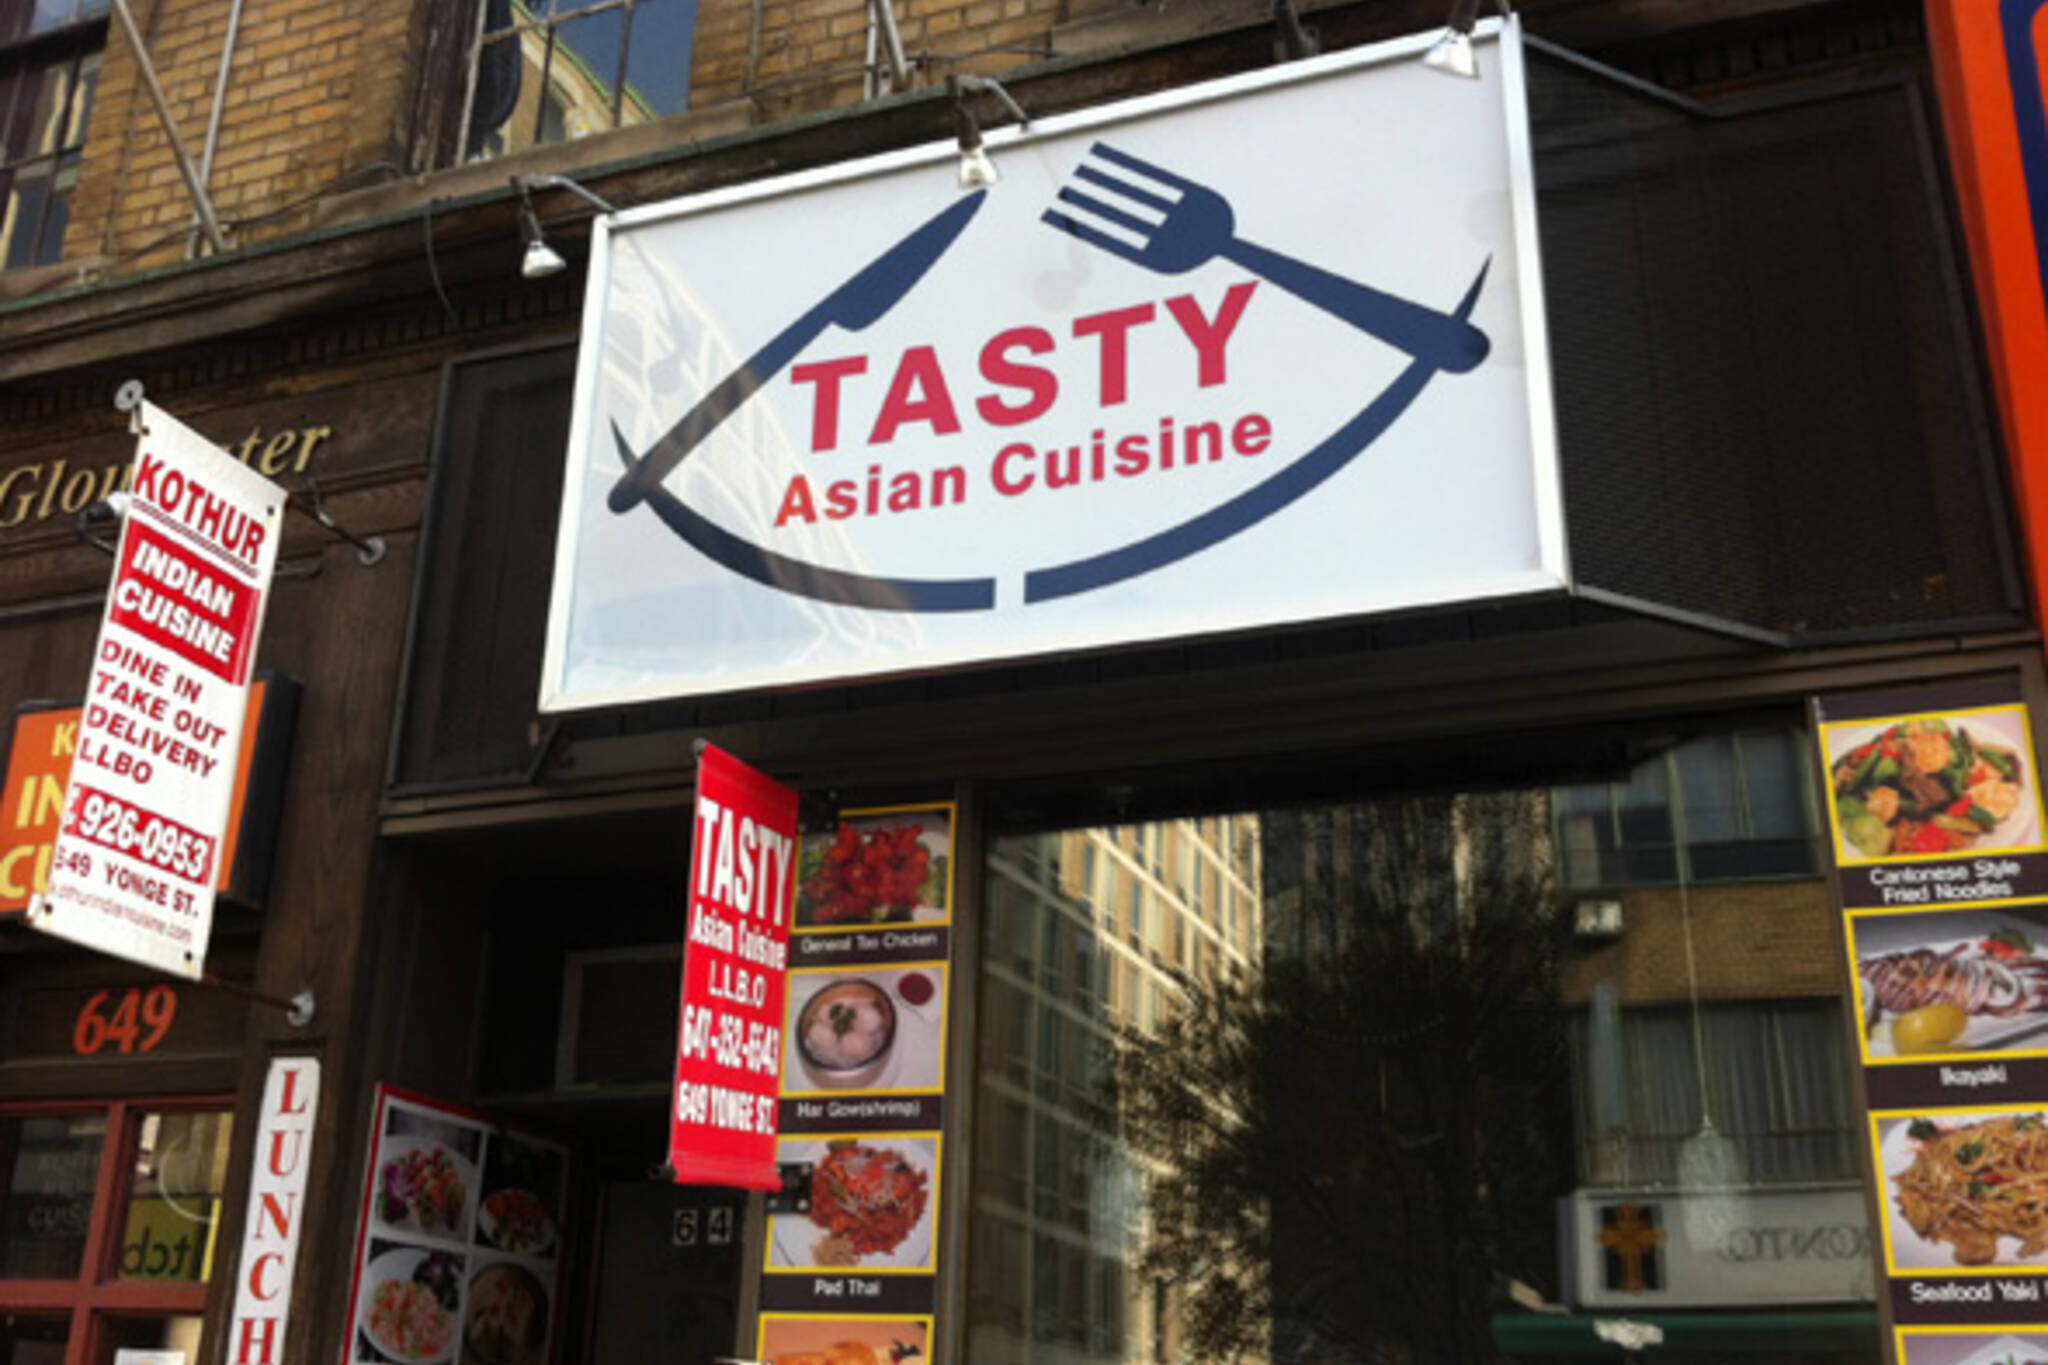 Tasty Asian Cuisine